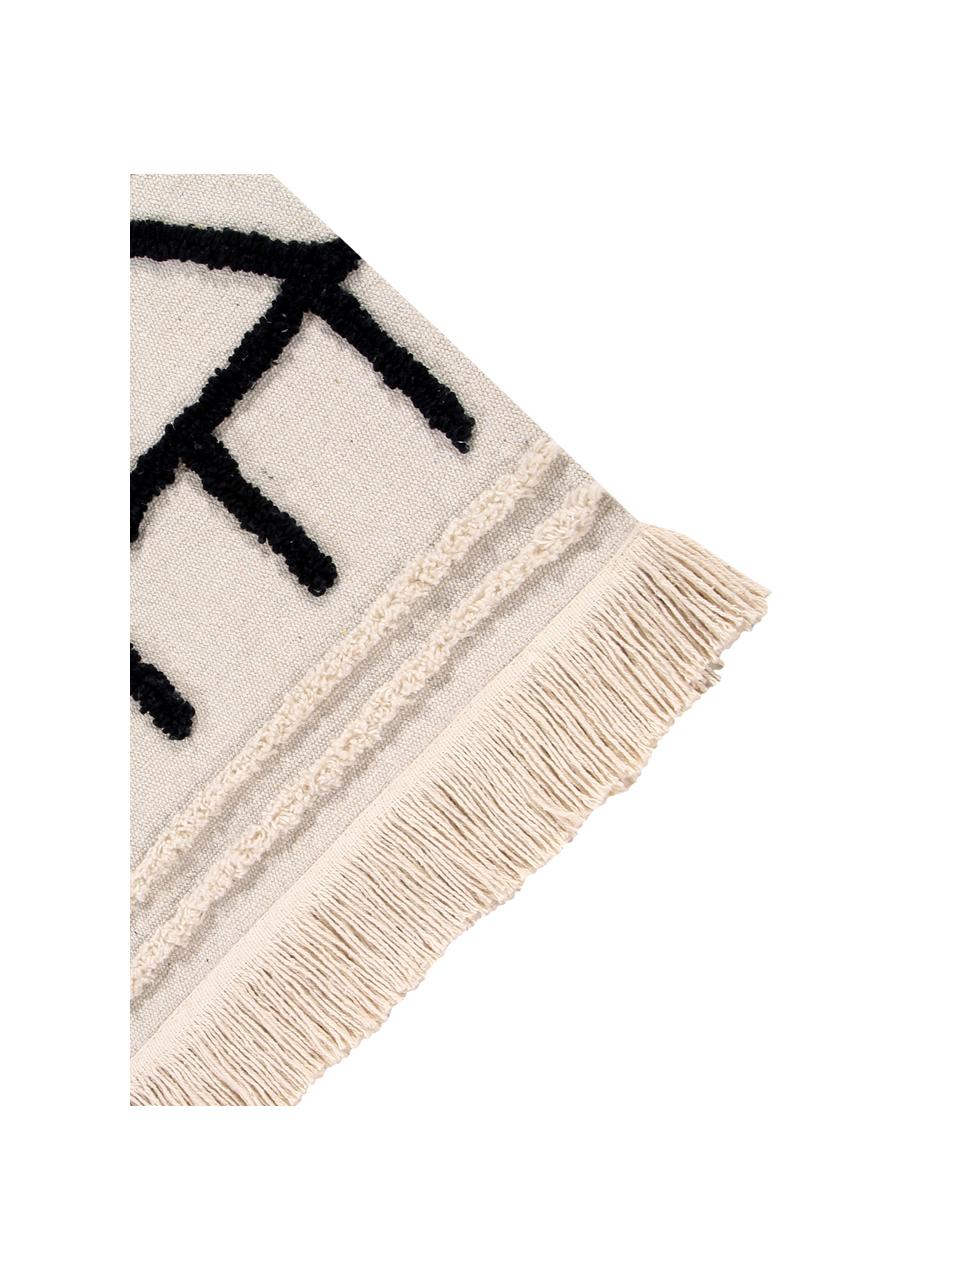 Teppich Berber, Flor: 60% Baumwolle, 40% recyce, Beige, Schwarz, B 170 x L 240 cm (Größe M)